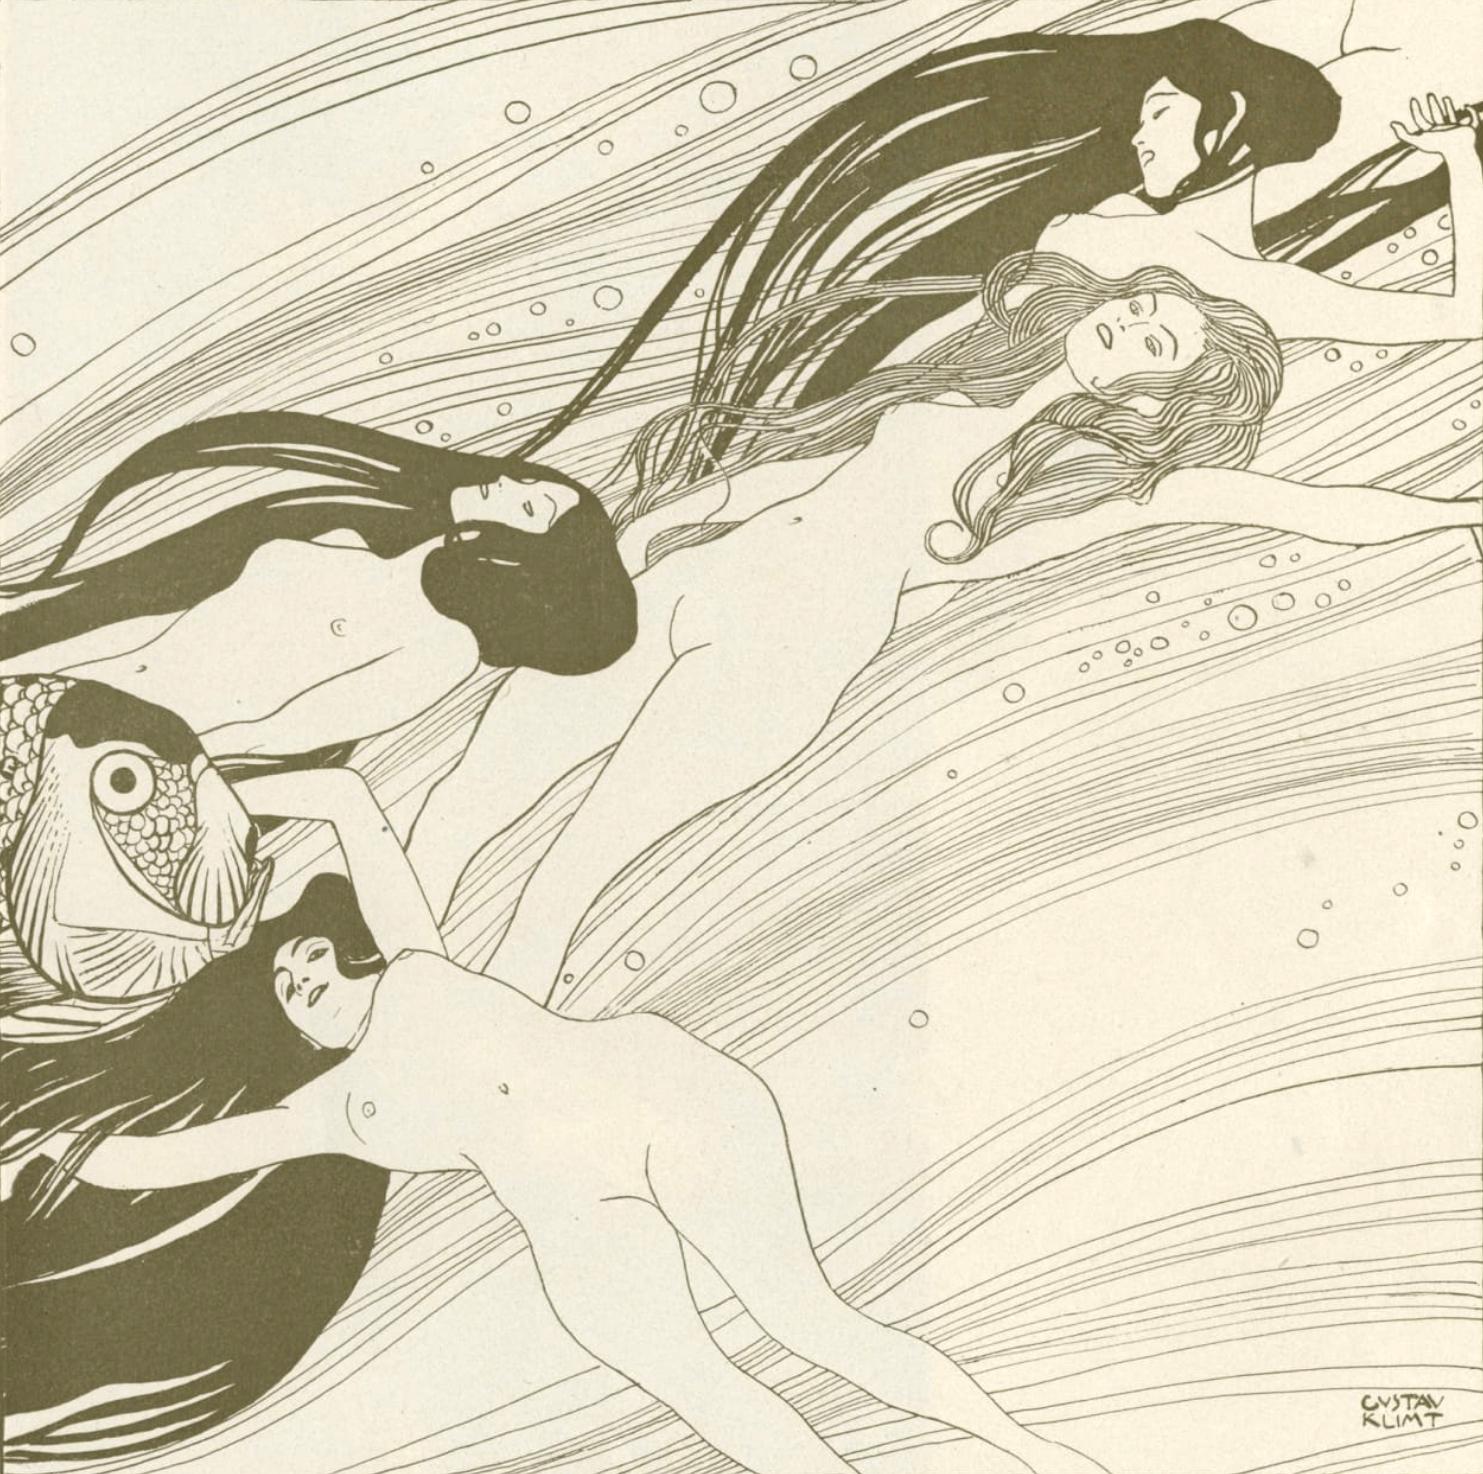 Ver Sacrum (lateinisch für "Heiliger Frühling") wurde von Gustav Klimt, Max Kurzweil und Ludwig Hevesi konzipiert. In den sechs Jahren ihres Bestehens wurden 471 Originalzeichnungen, 55 Lithografien und Kupferstiche sowie 216 Blockdrucke von